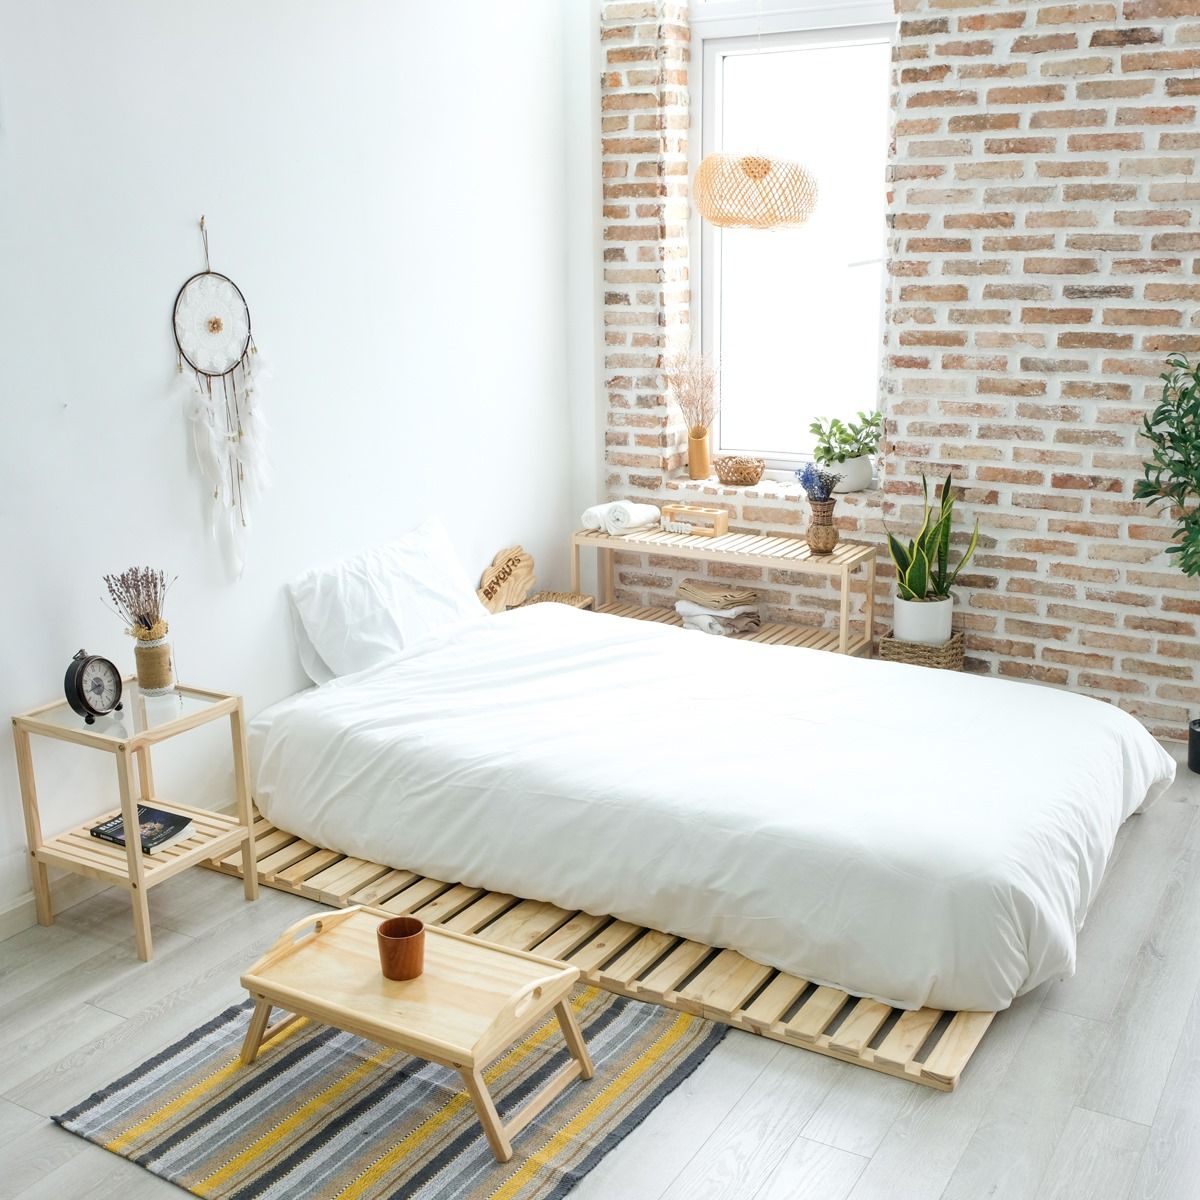 Thiết kế tối giản cùng màu sắc hài hòa giúp phòng ngủ 11m2 gọn gàng và tiện ích hơn